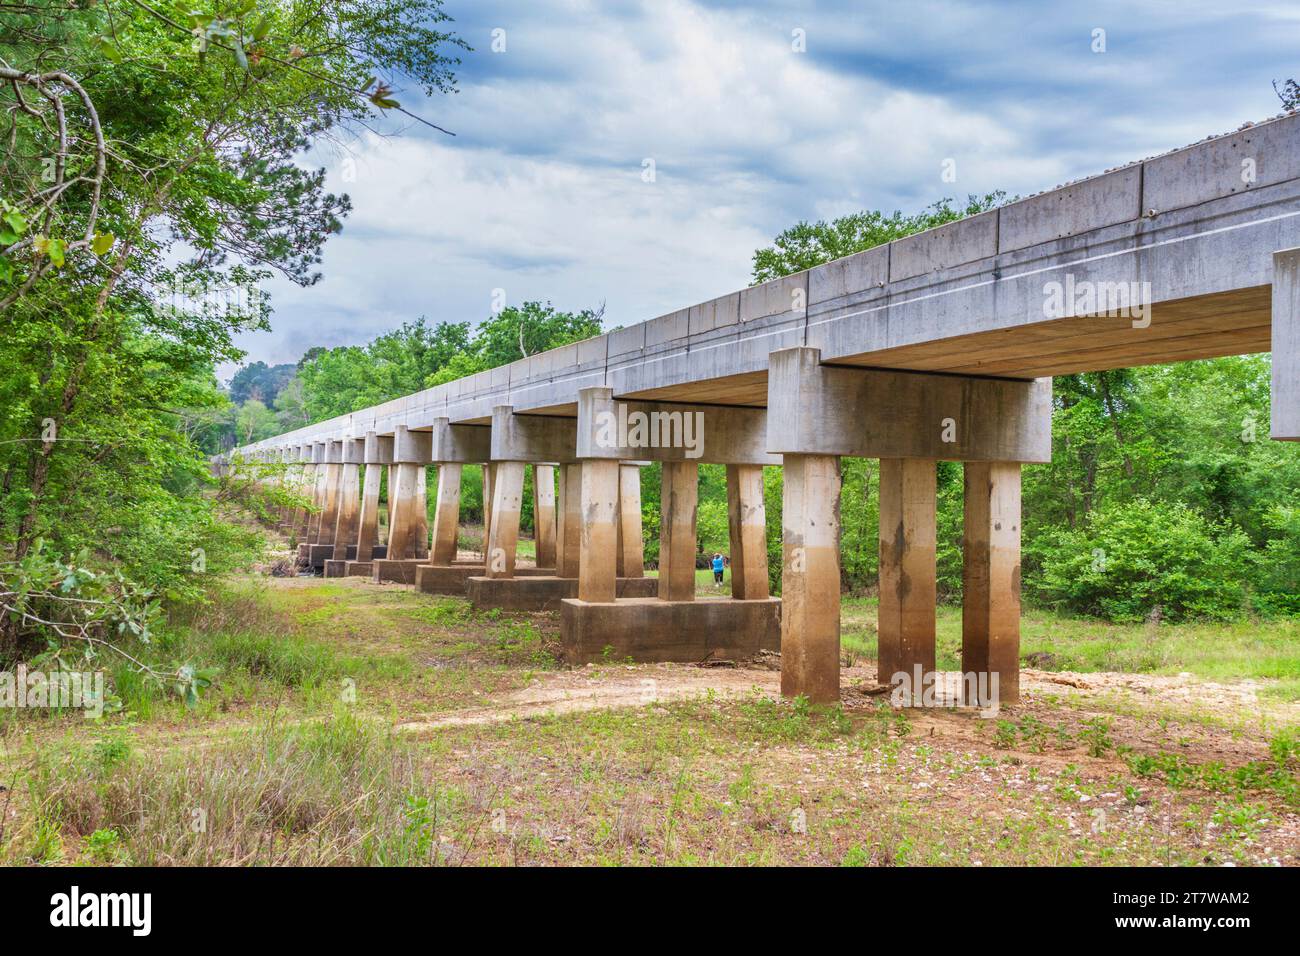 Bahngleise und Überquerung der Neches River Bridge, Ort der Texas State Railroad, die 2012 Railfest Photoexkursion startet. Stockfoto